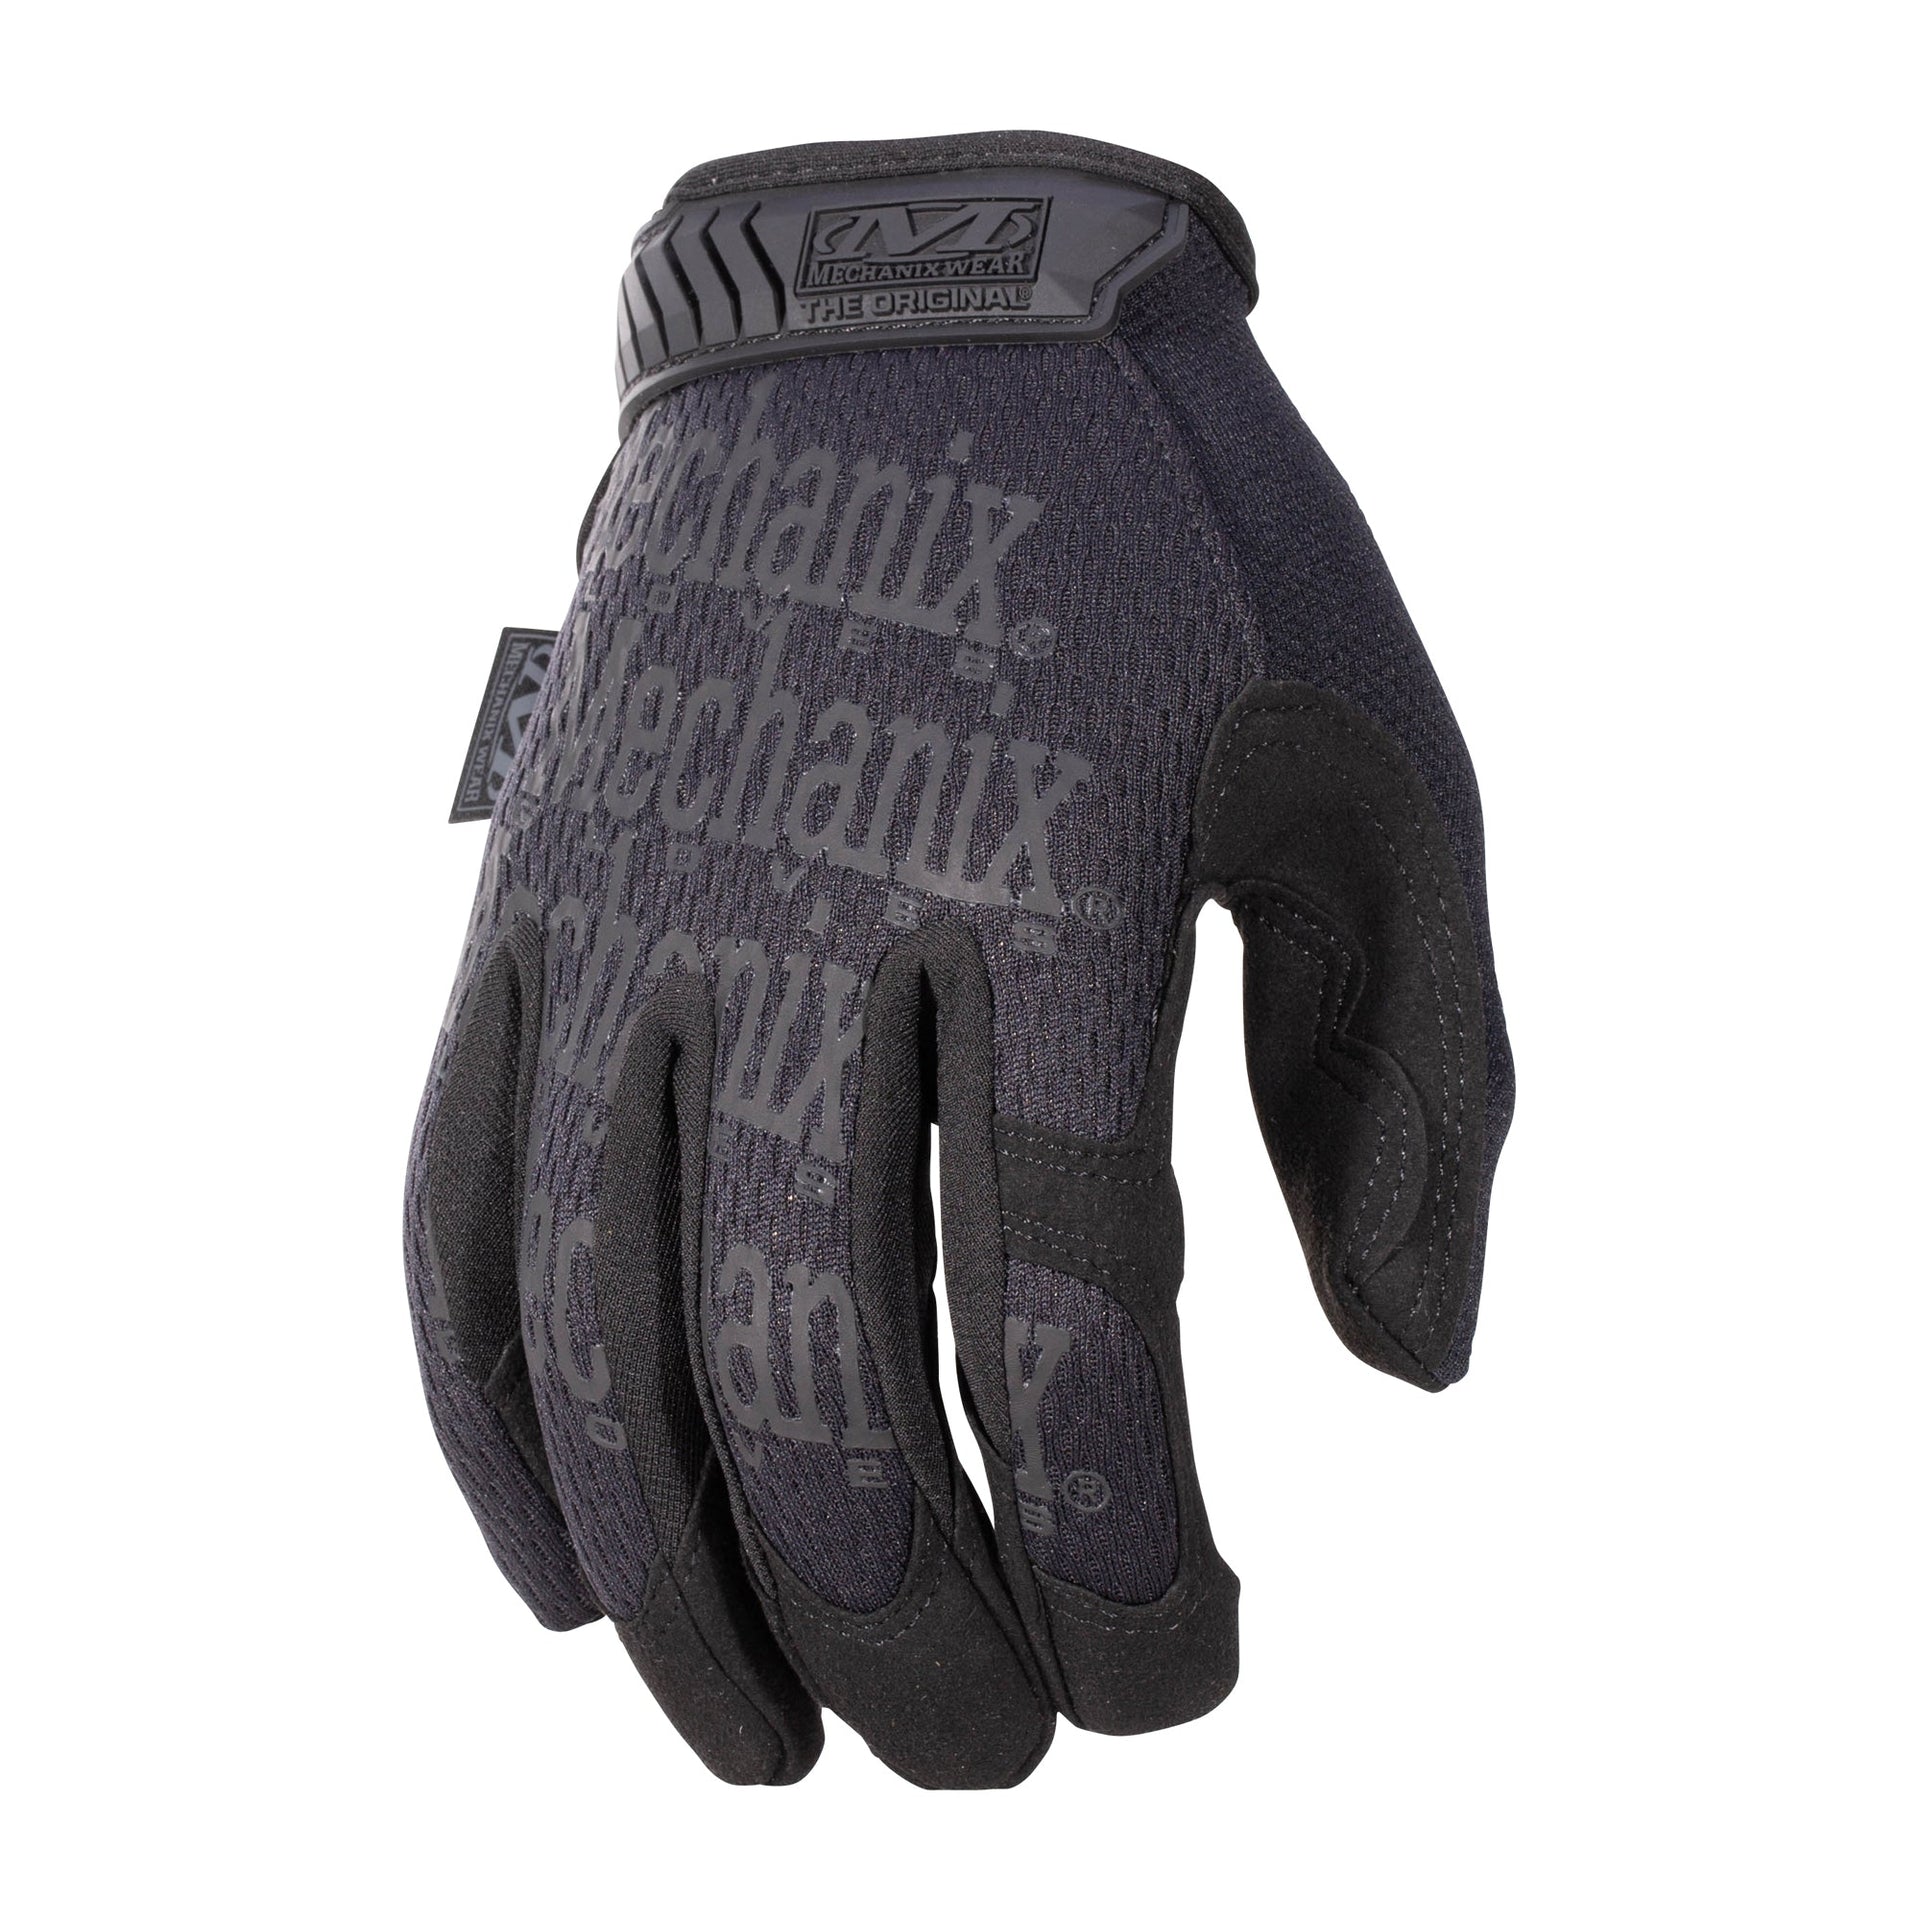 Gloves The Original covert